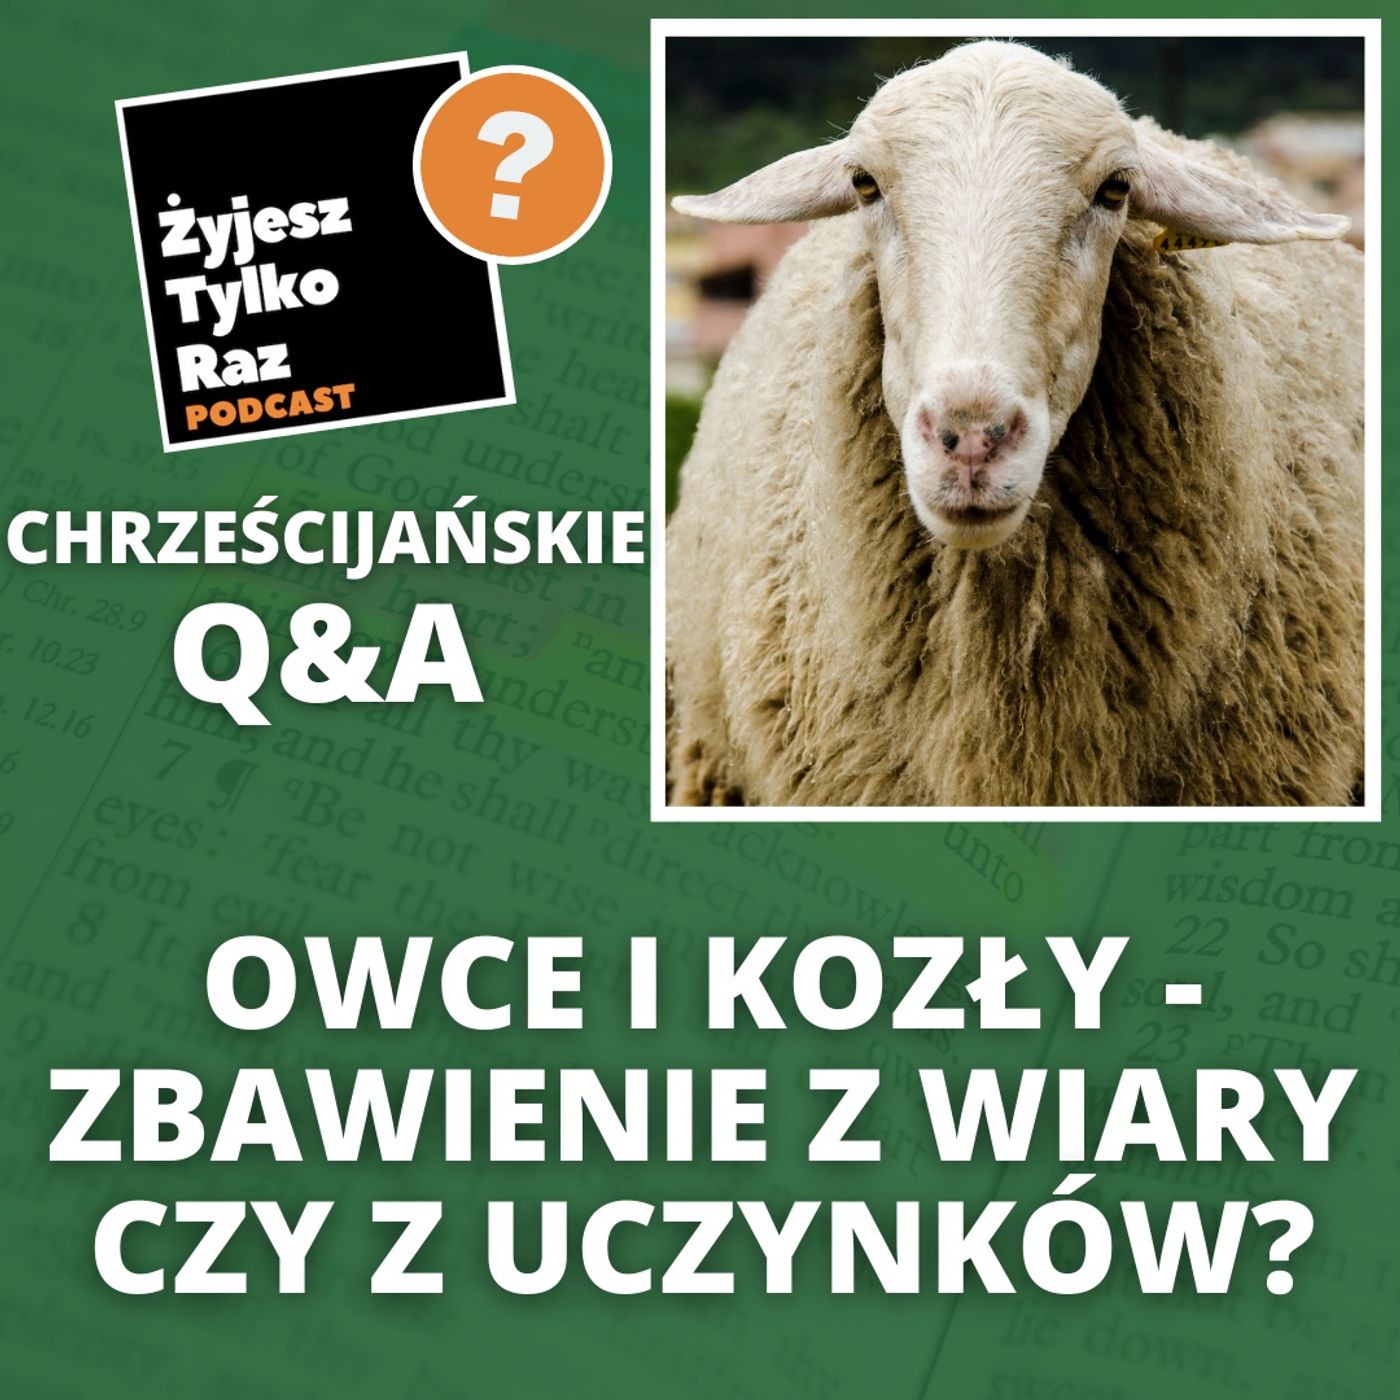 Owce i kozły - zbawienie z wiary czy z uczynków? | Chrześcijańskie Q&A #20